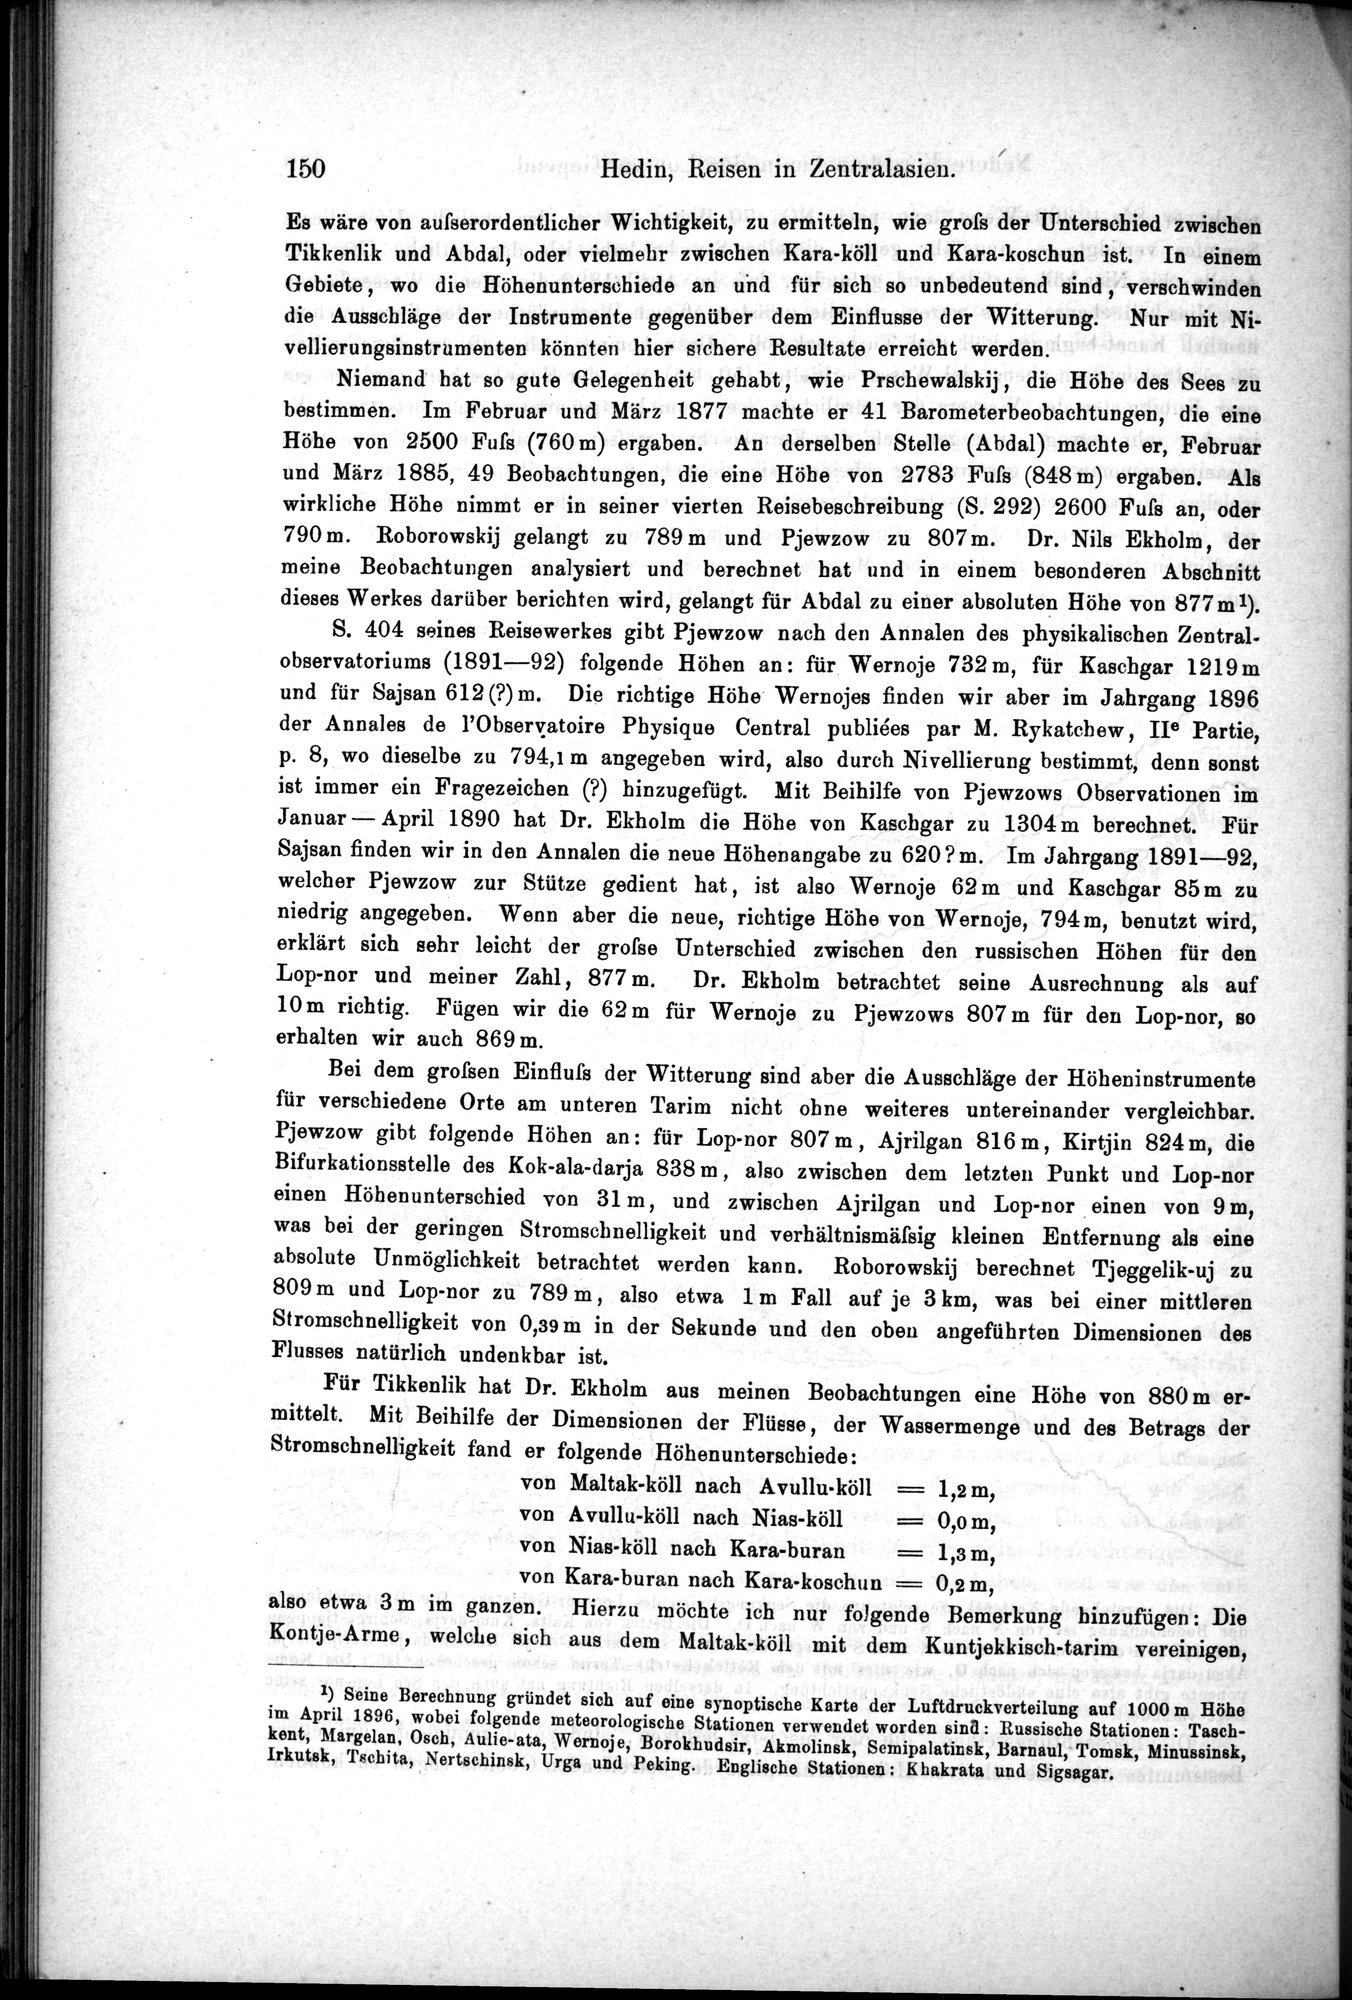 Die Geographische-Wissenschaftlichen Ergebnisse meiner Reisen in Zentralasien, 1894-1897 : vol.1 / Page 162 (Grayscale High Resolution Image)